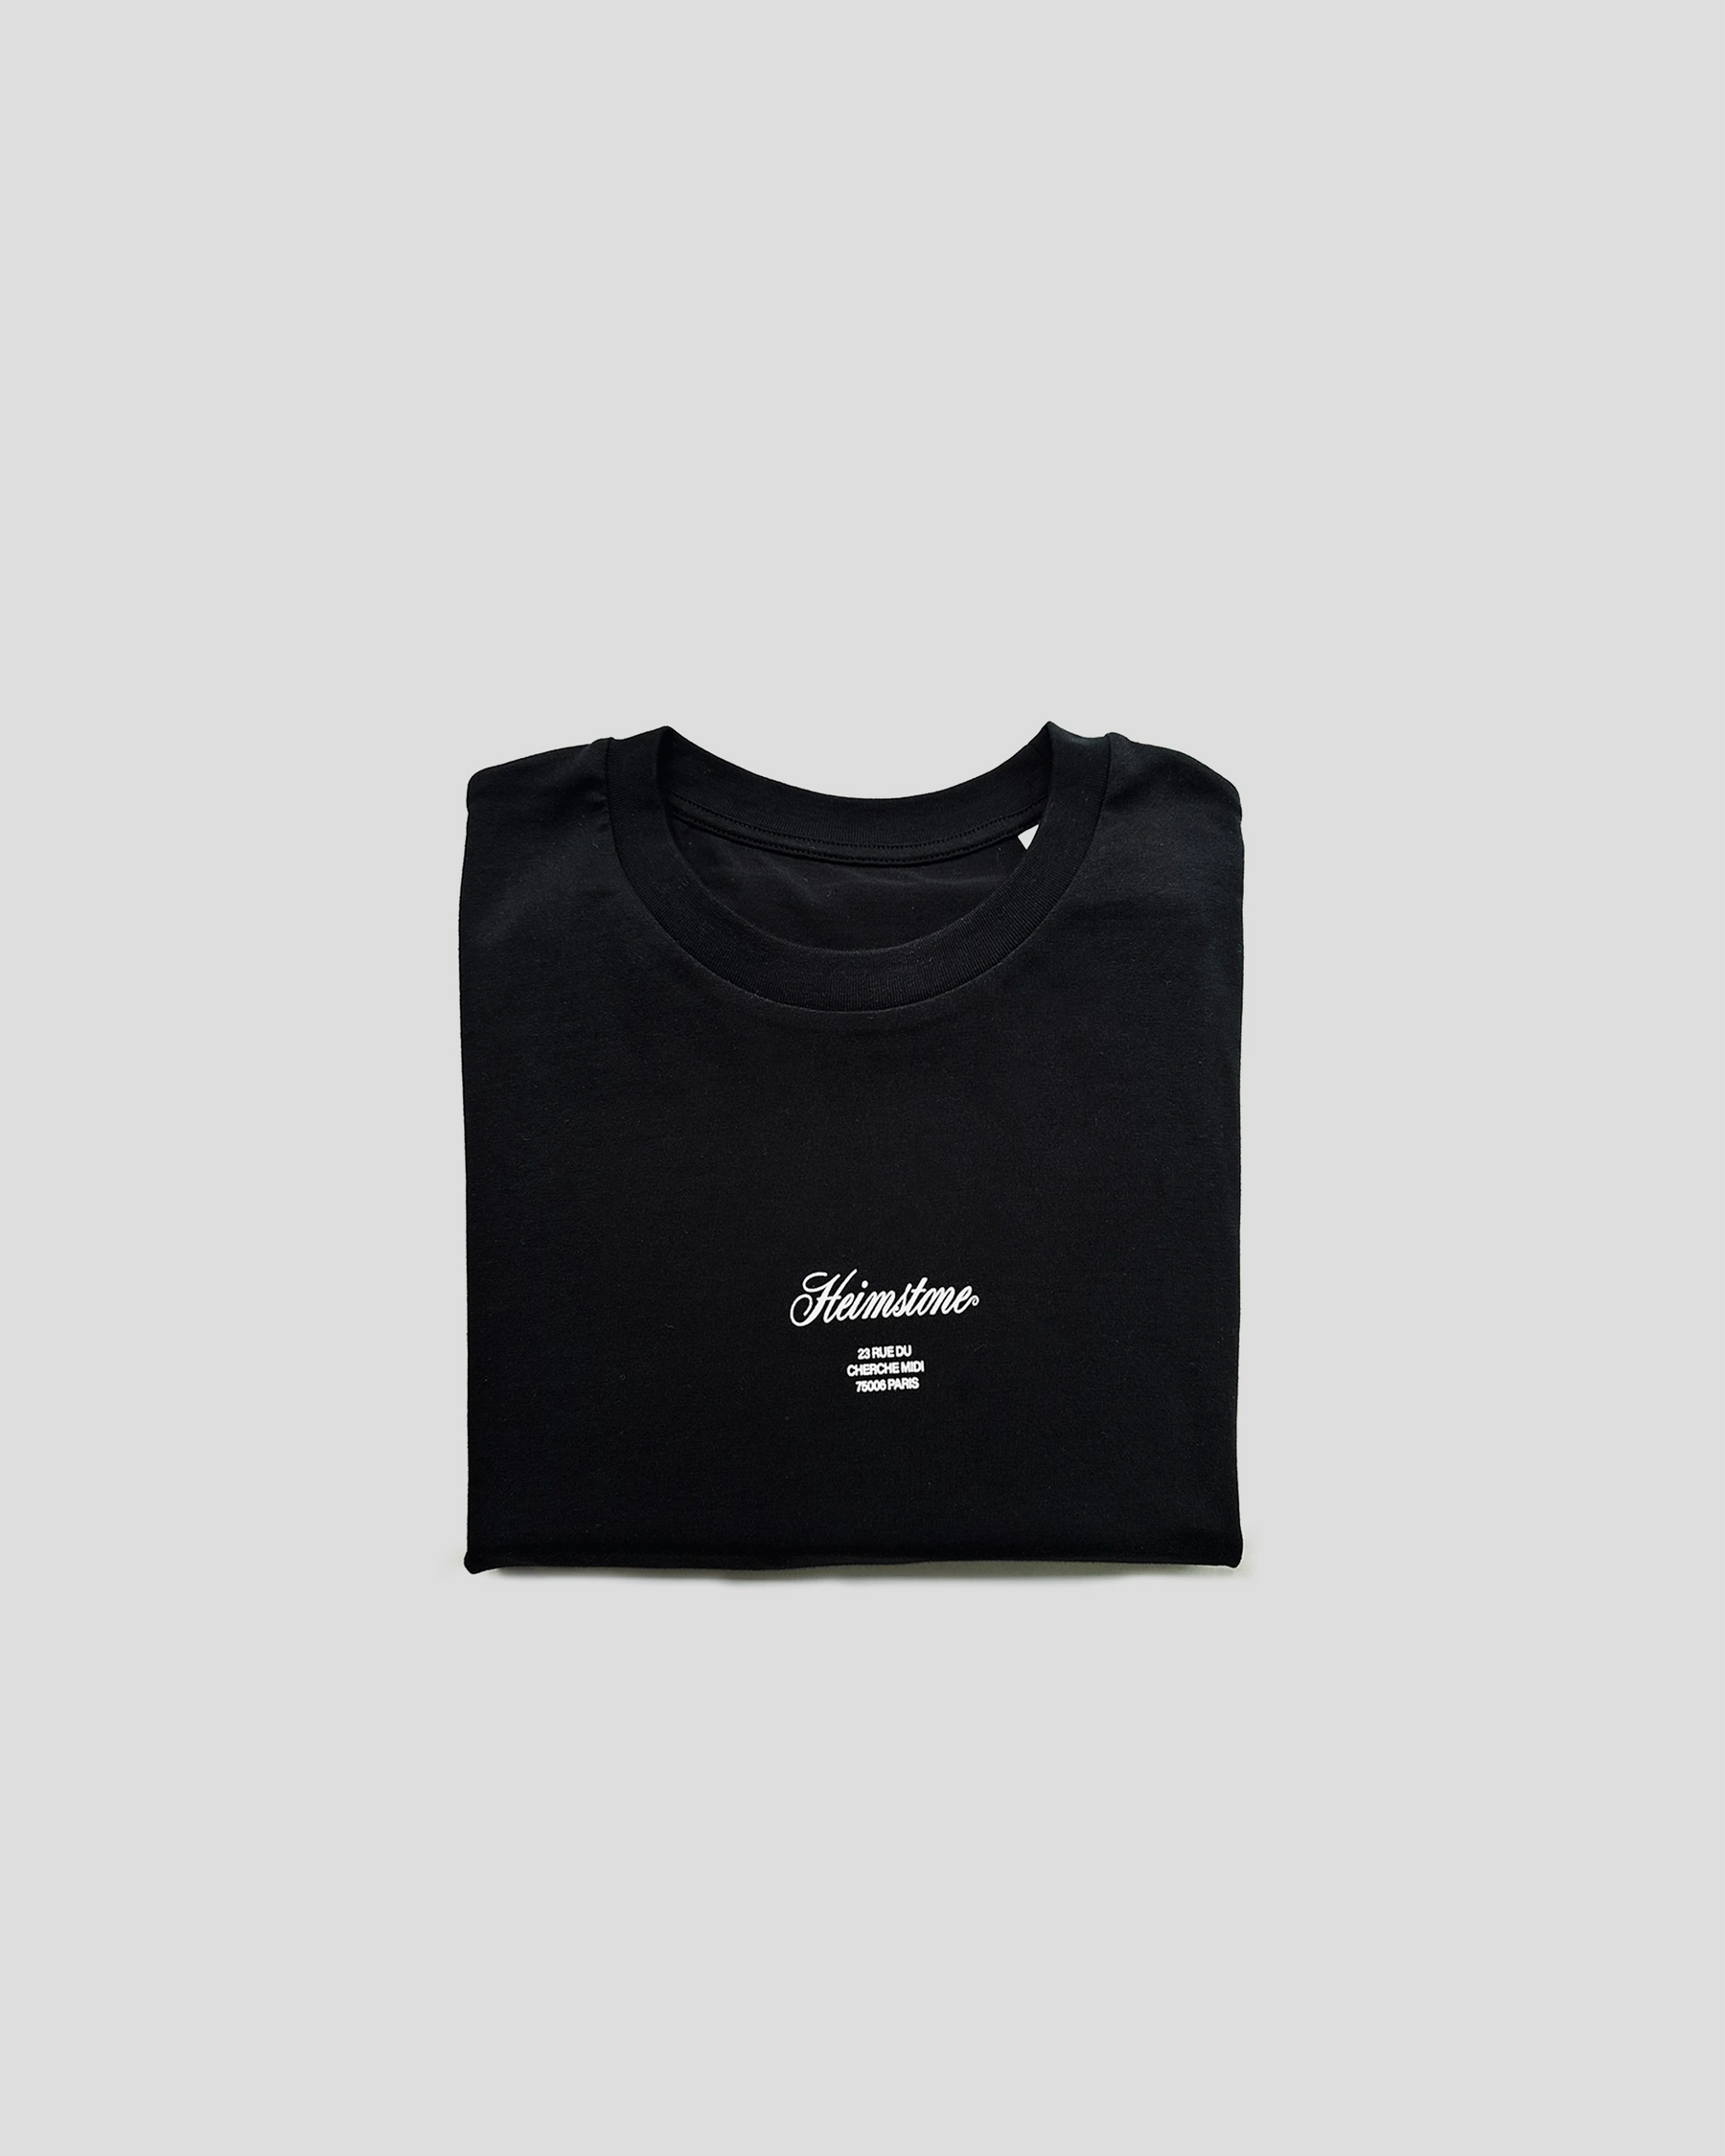 T-shirt Collector Unisexe – Noir avec Logo Heimstone Blanc Cassé